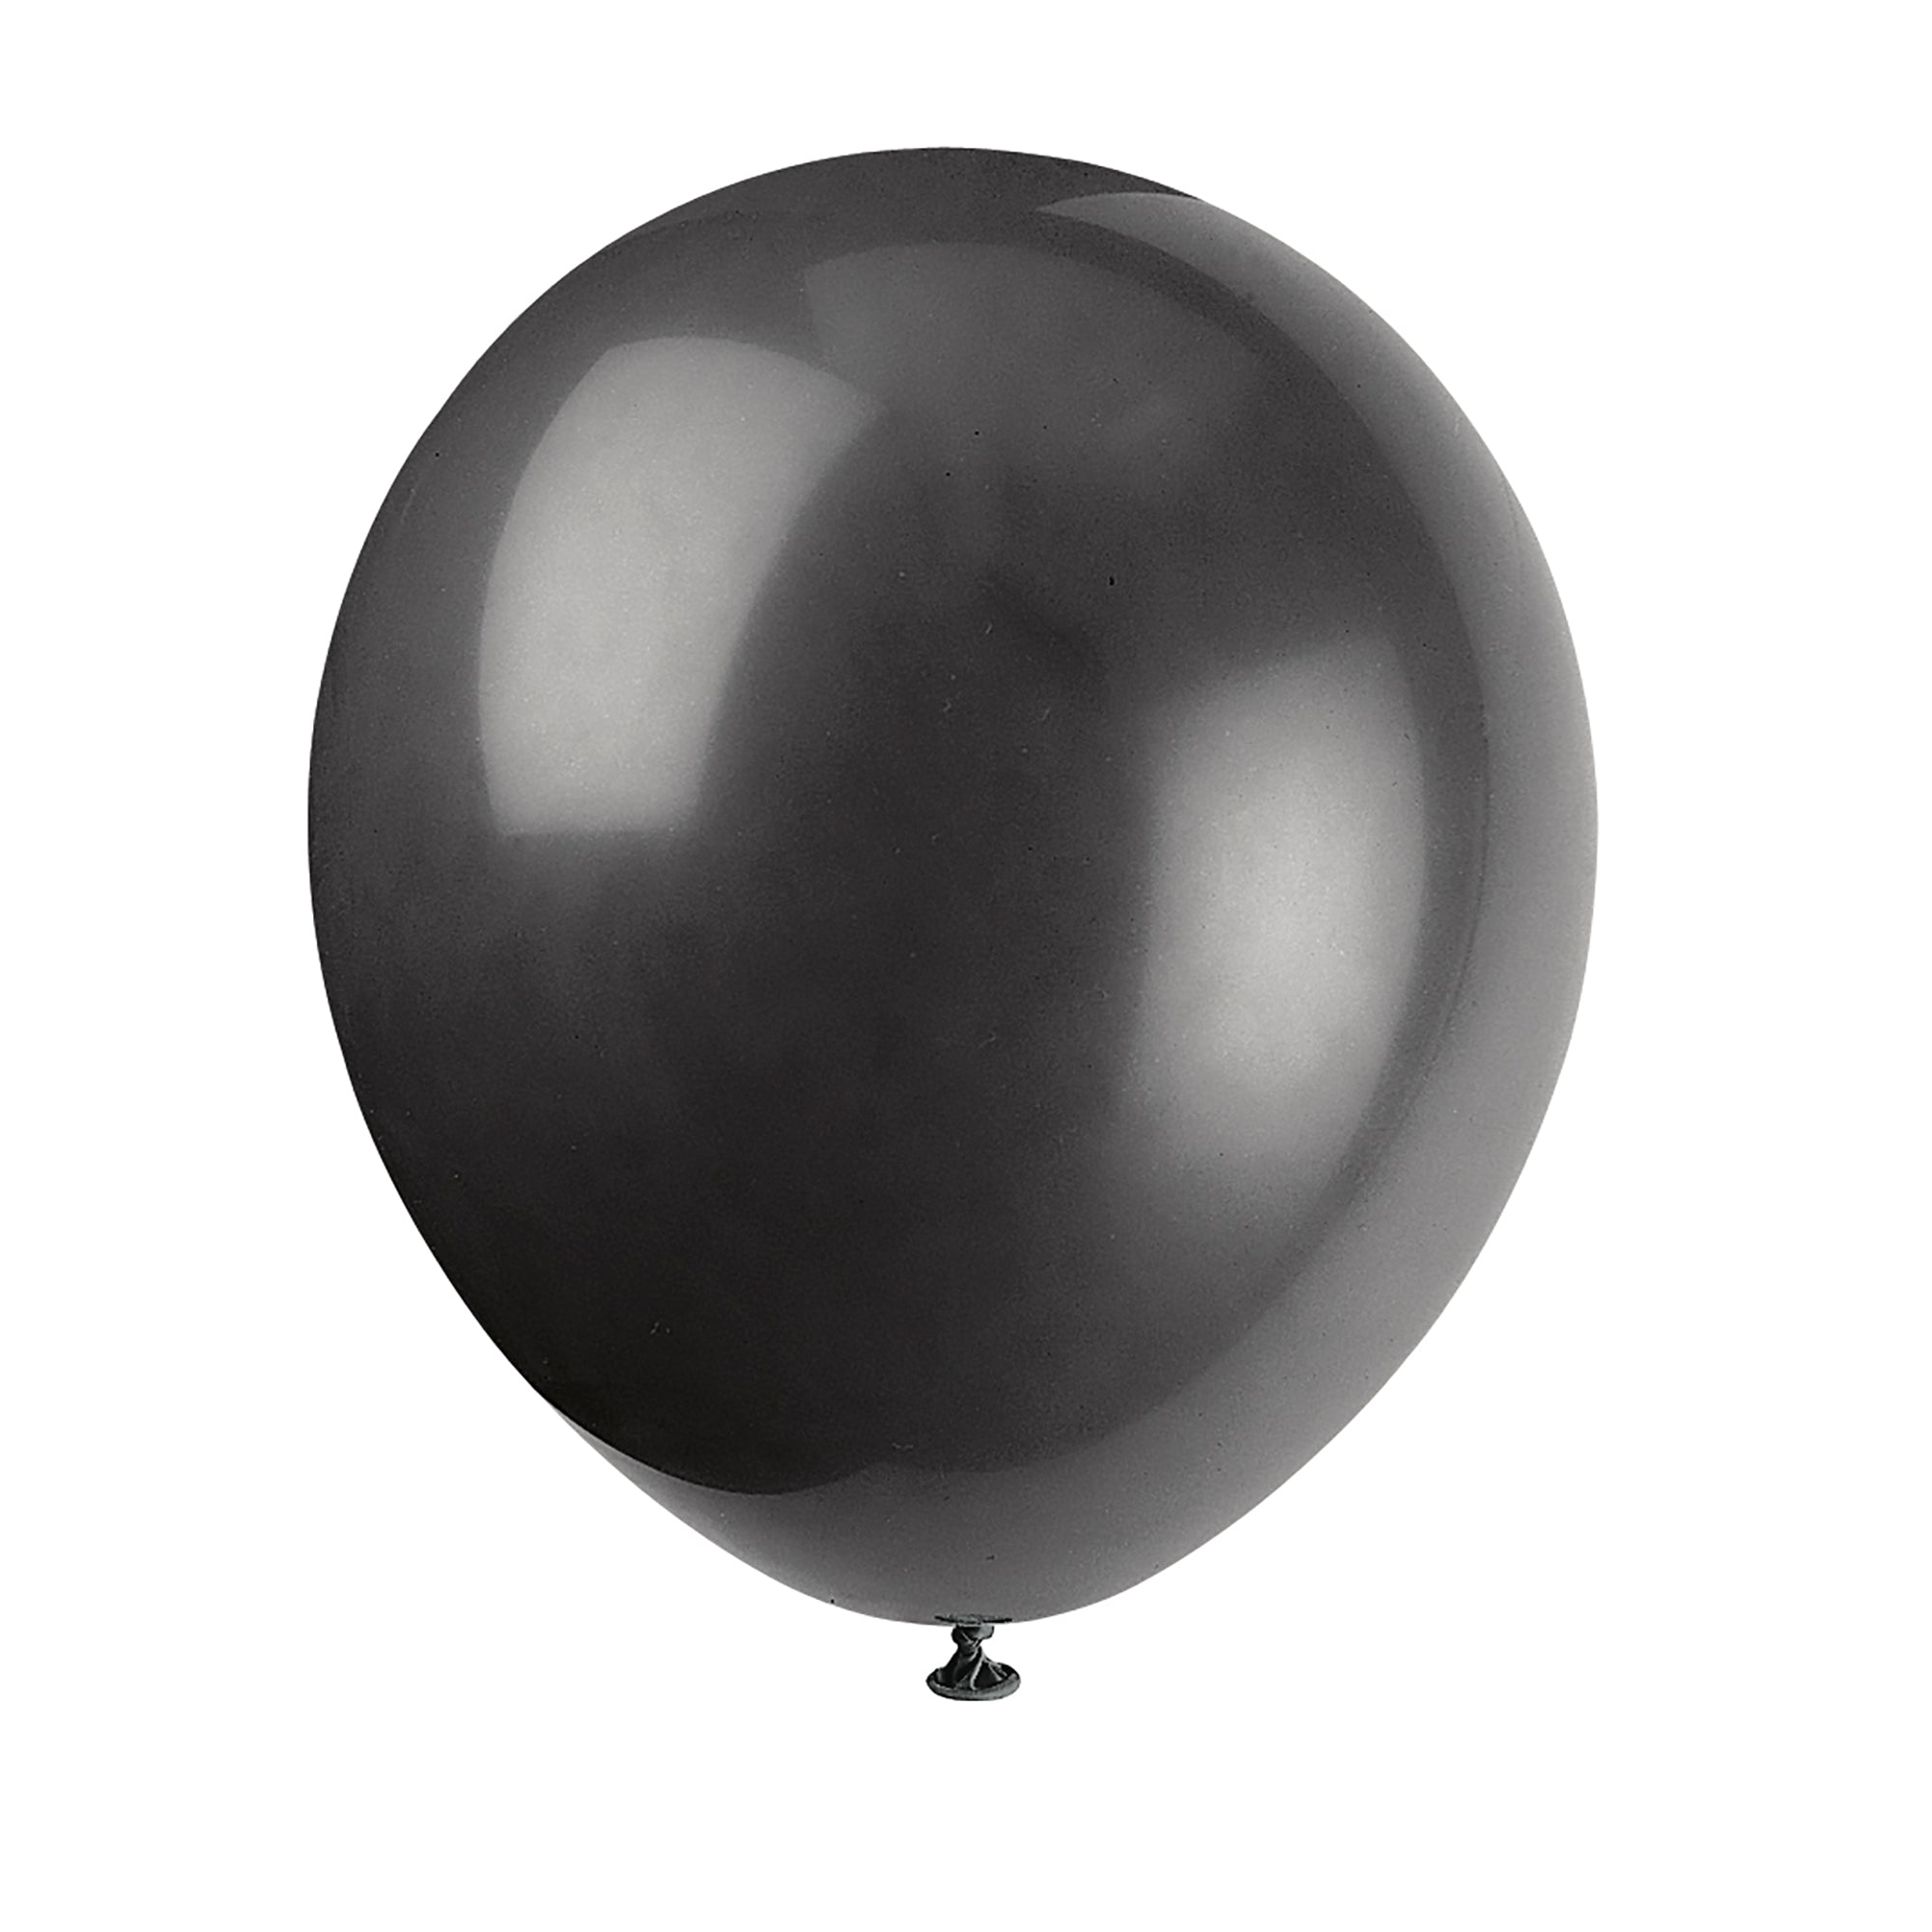 10 Latex Balloons 12in Jet Black